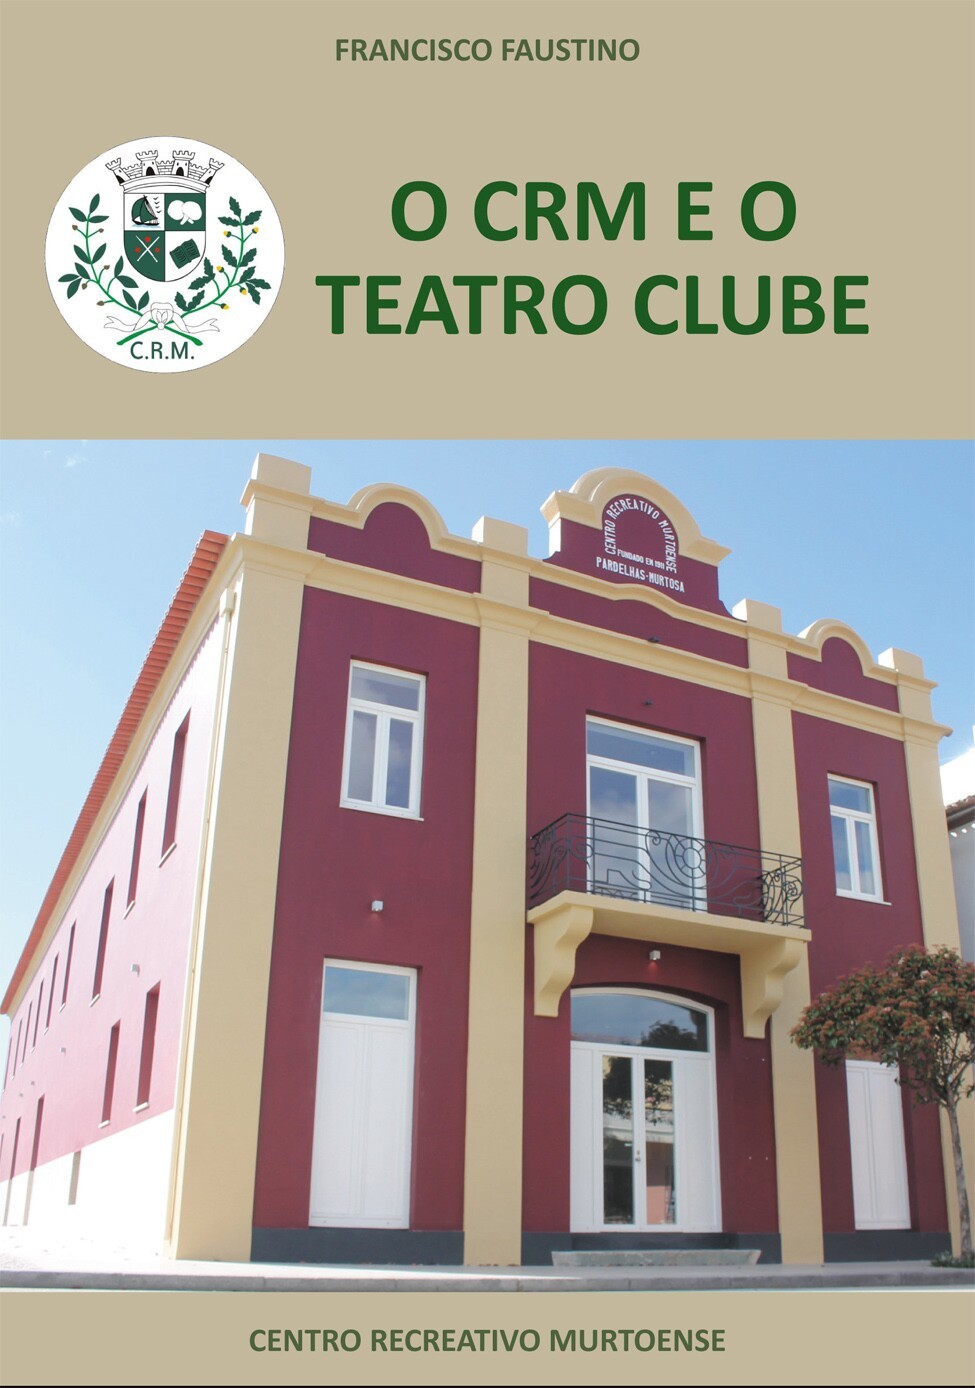 Apresentação do Livro “O Crm e o Teatro Clube”, de Francisco Faustino